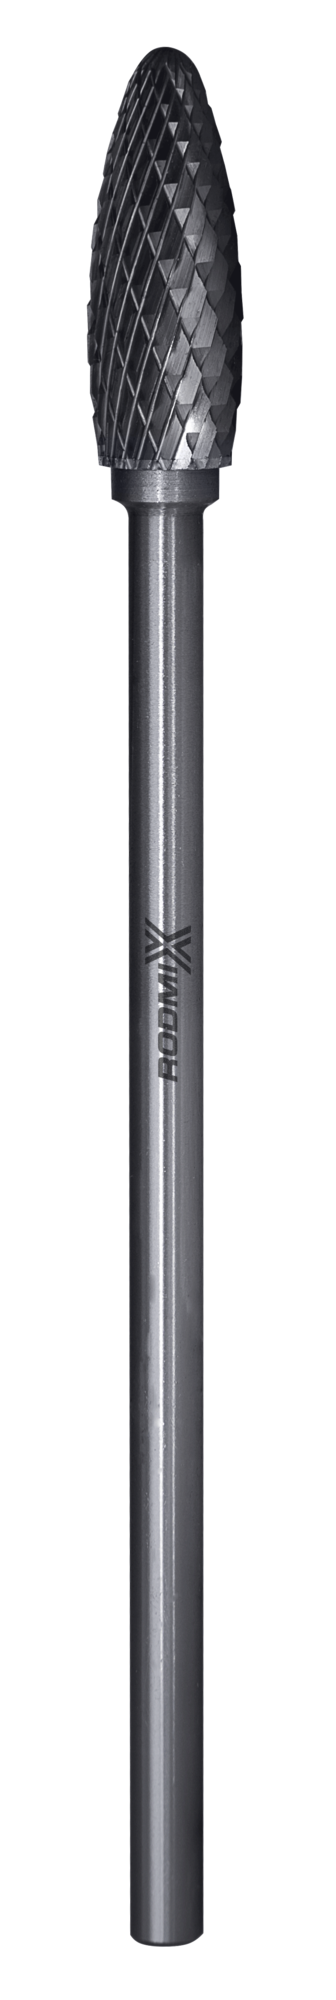 Твердосплавная борфреза по металлу тип H пламевидная удлиненная 19х41 L150 М6 мм двойная насечка